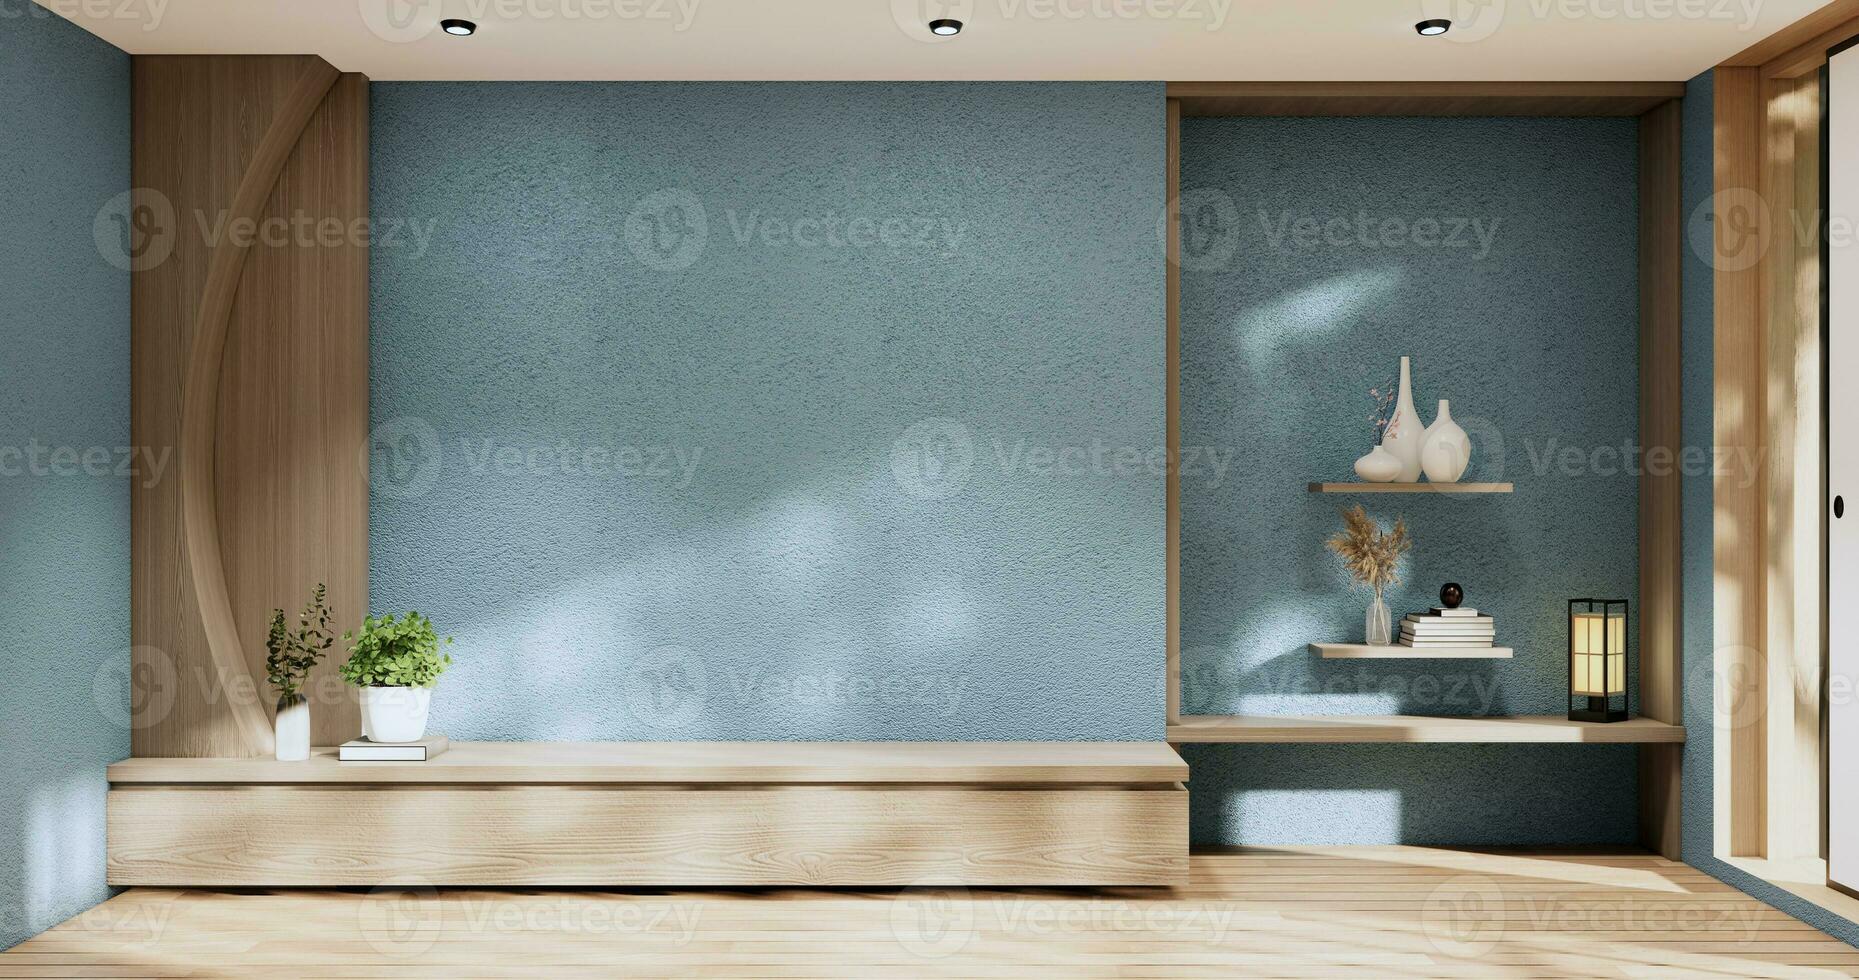 Kabinett im modern Zen Leben Zimmer auf Licht Blau Mauer Hintergrund, 3d Rendern foto